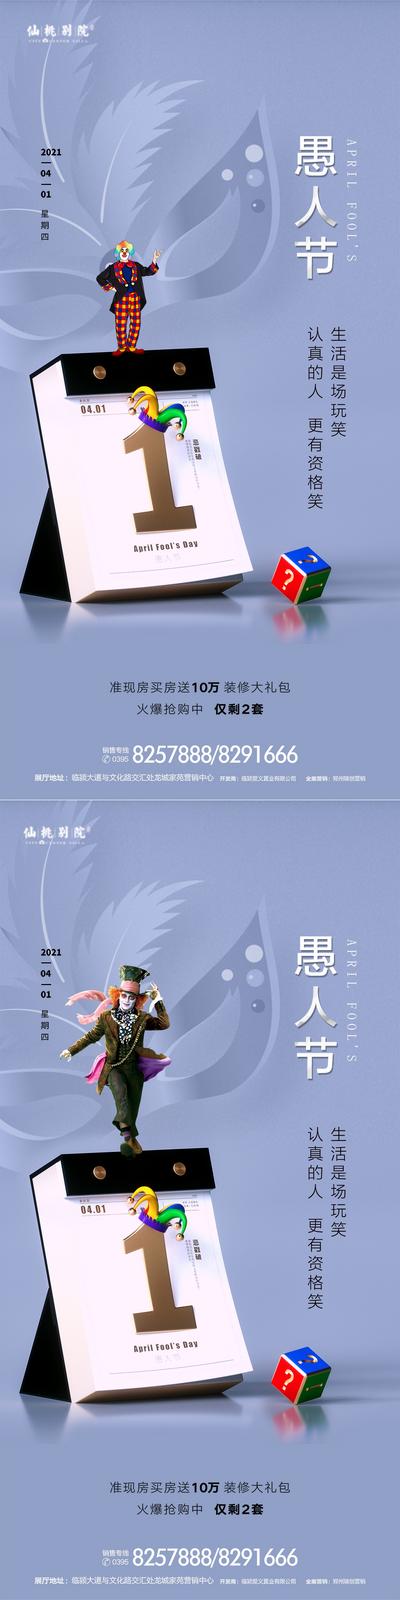 南门网 海报 房地产 愚人节 公历节日 日历 小丑 面具